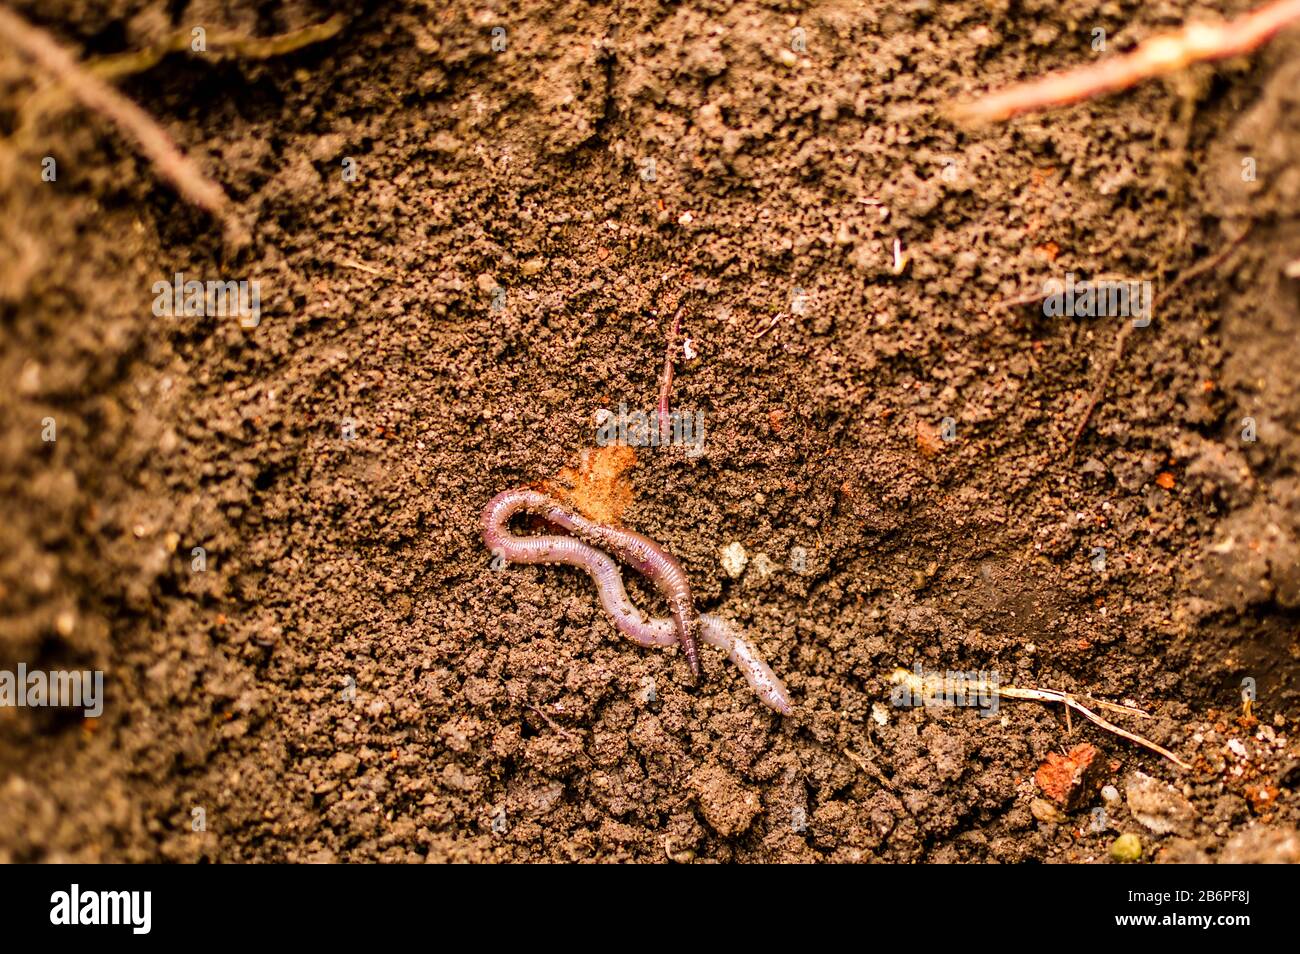 Un gusano comienza a rebabar en el suelo, un primer plano de una lombriz de tierra en condiciones naturales Foto de stock